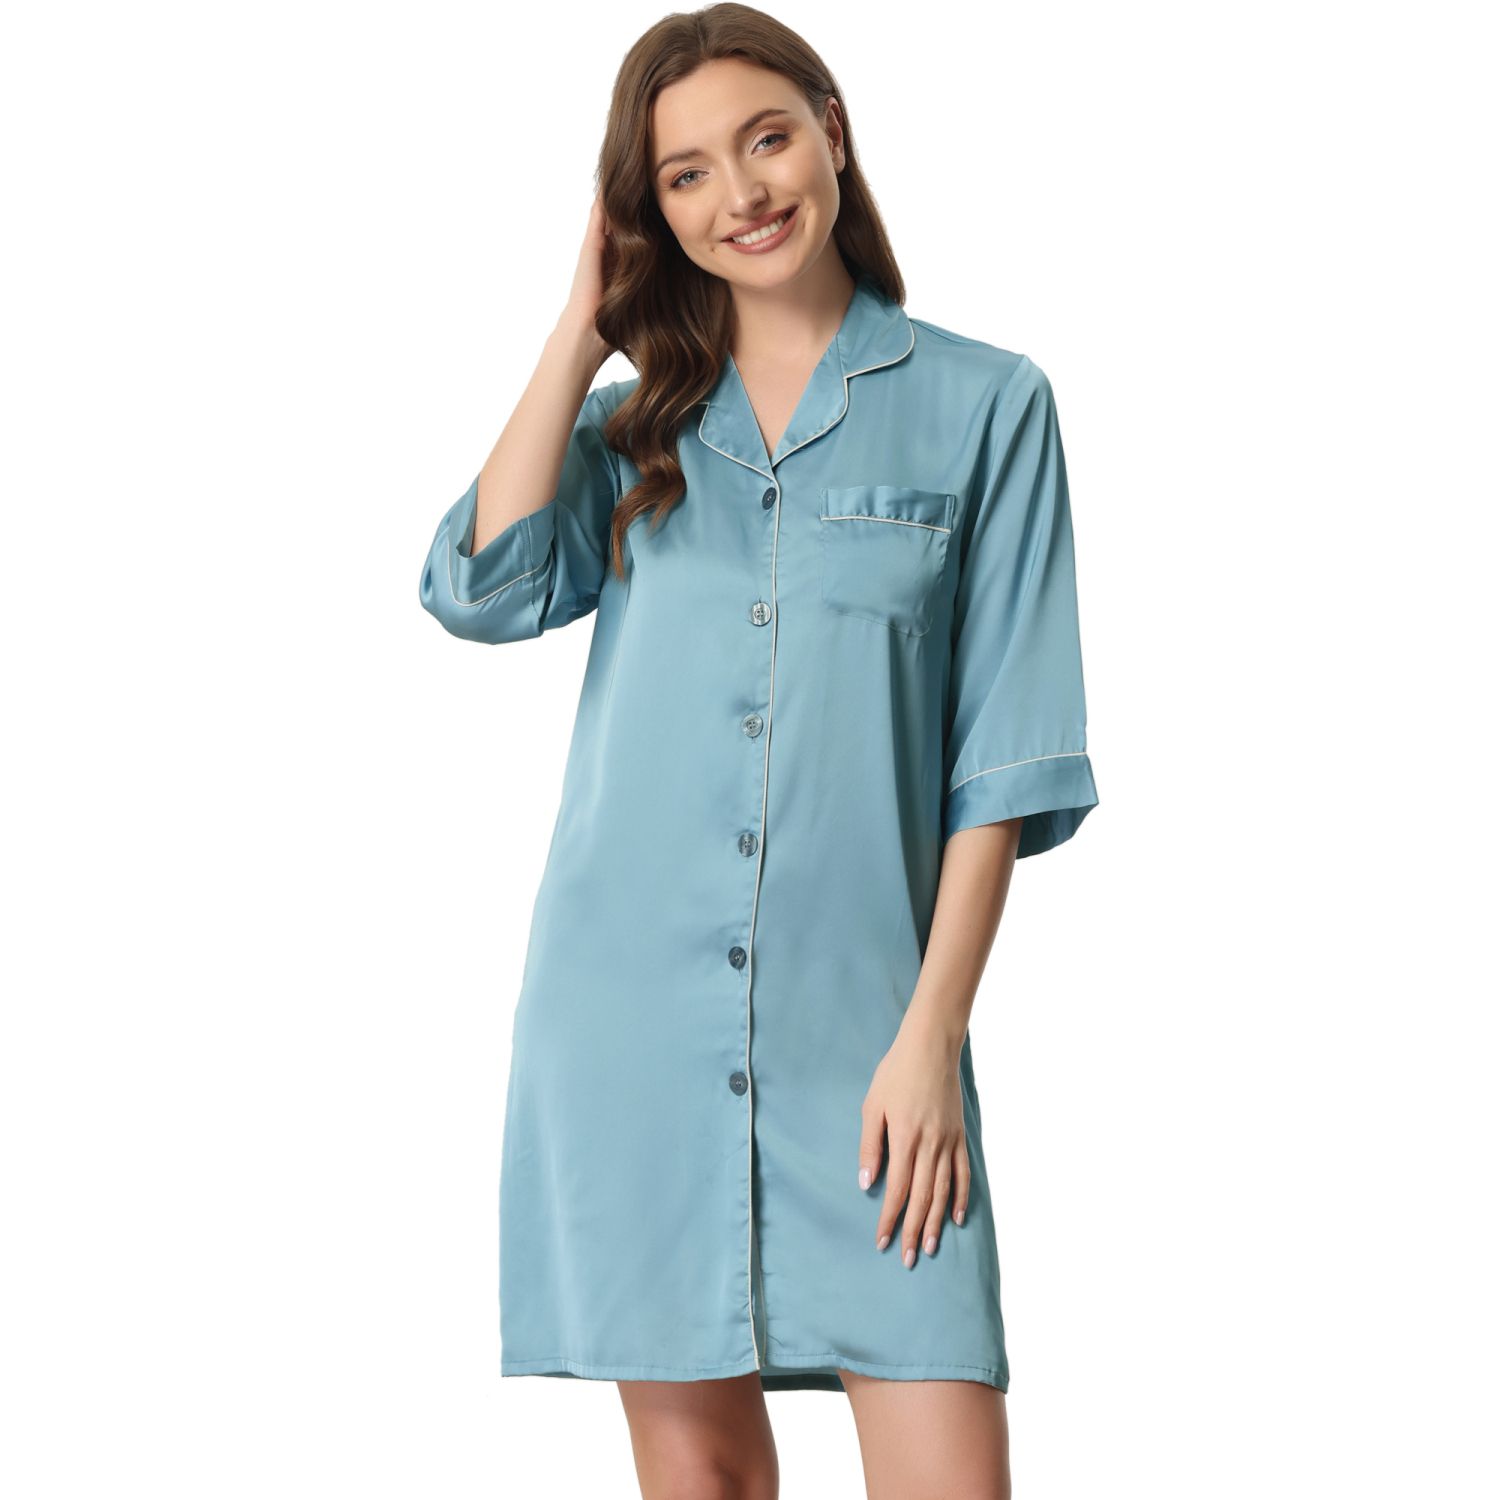 Women's Pajamas Dress Nightshirt Lace Trim Lounge Nightgown